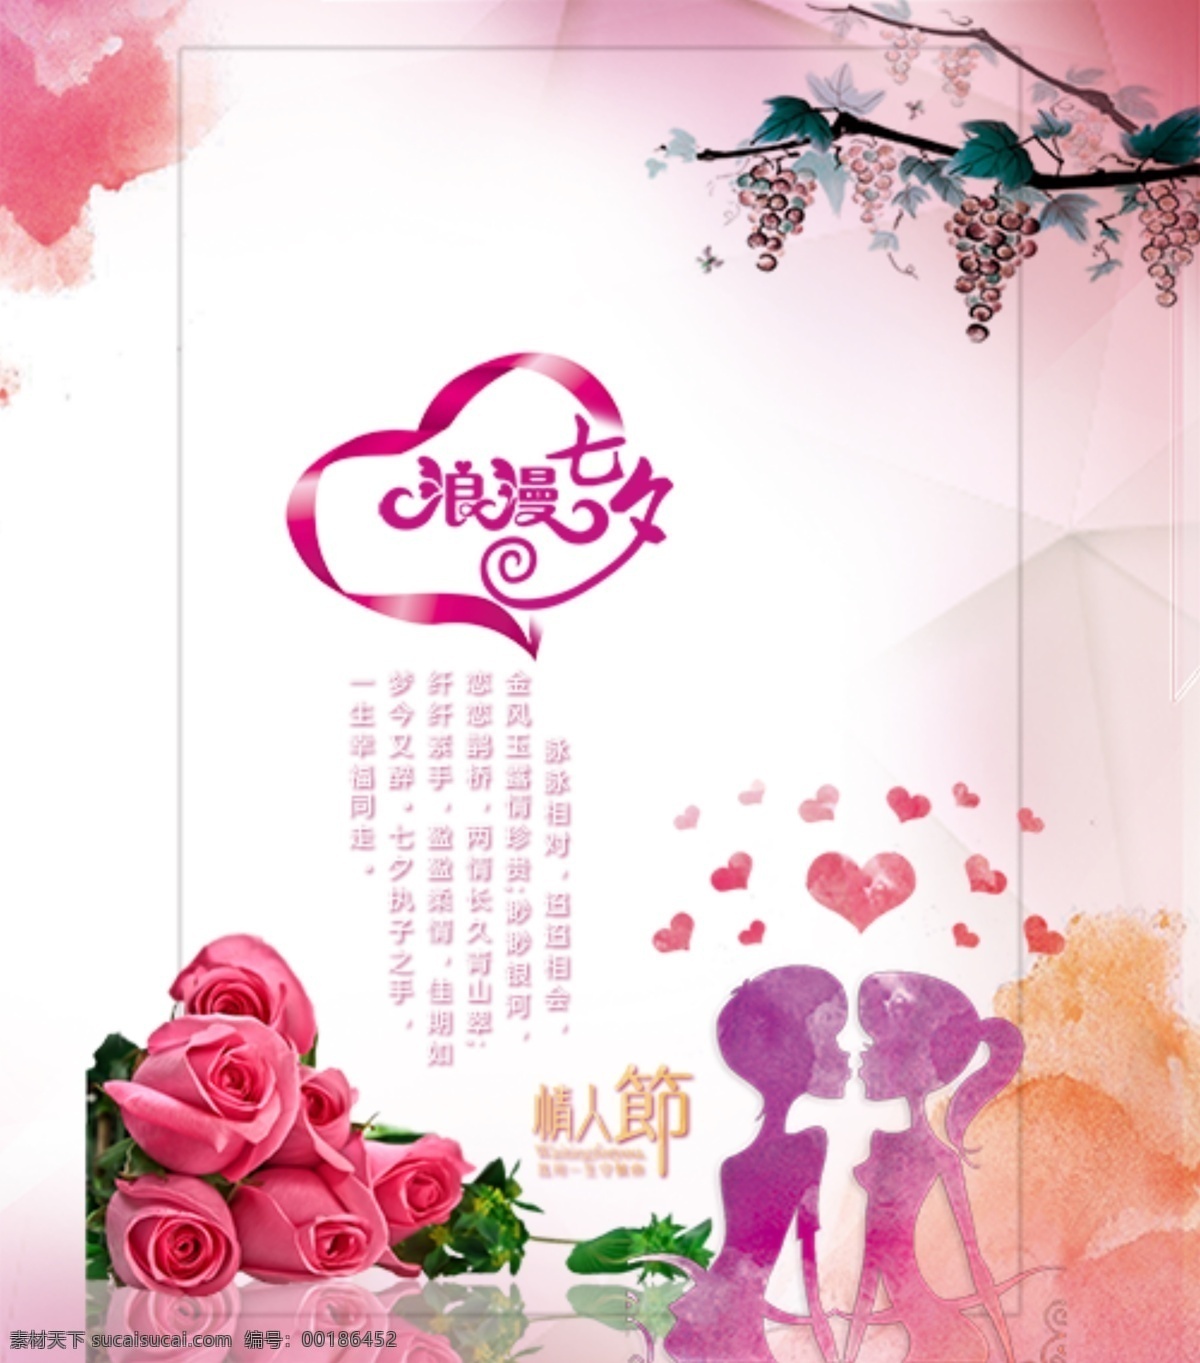 七夕节 情人节 展架 展板 海报 写真 粉色背景 玫瑰 爱心 葡萄架 高清素材 psd分层 可编辑 白色